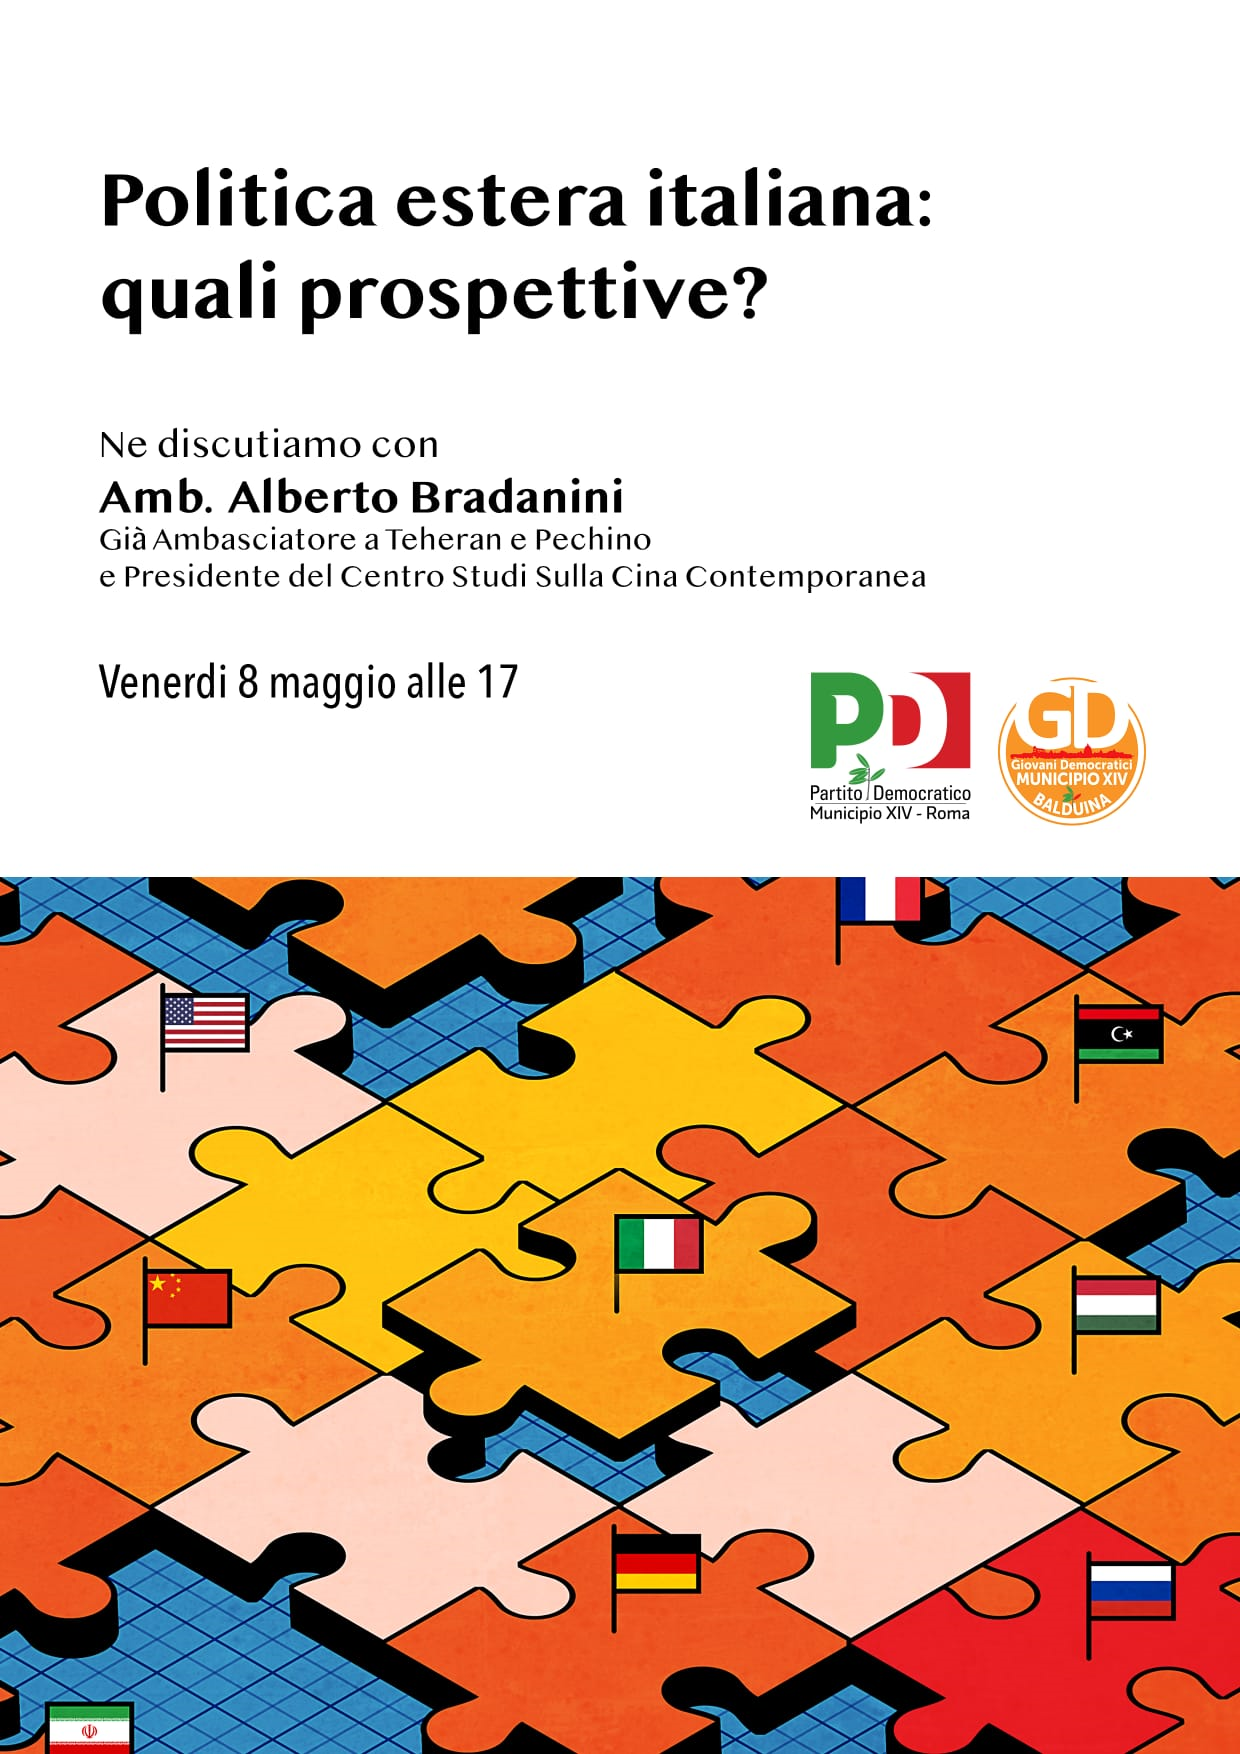 Politica estera italiana – Incontro on line con l’Ambasciatore Alberto Bradanini